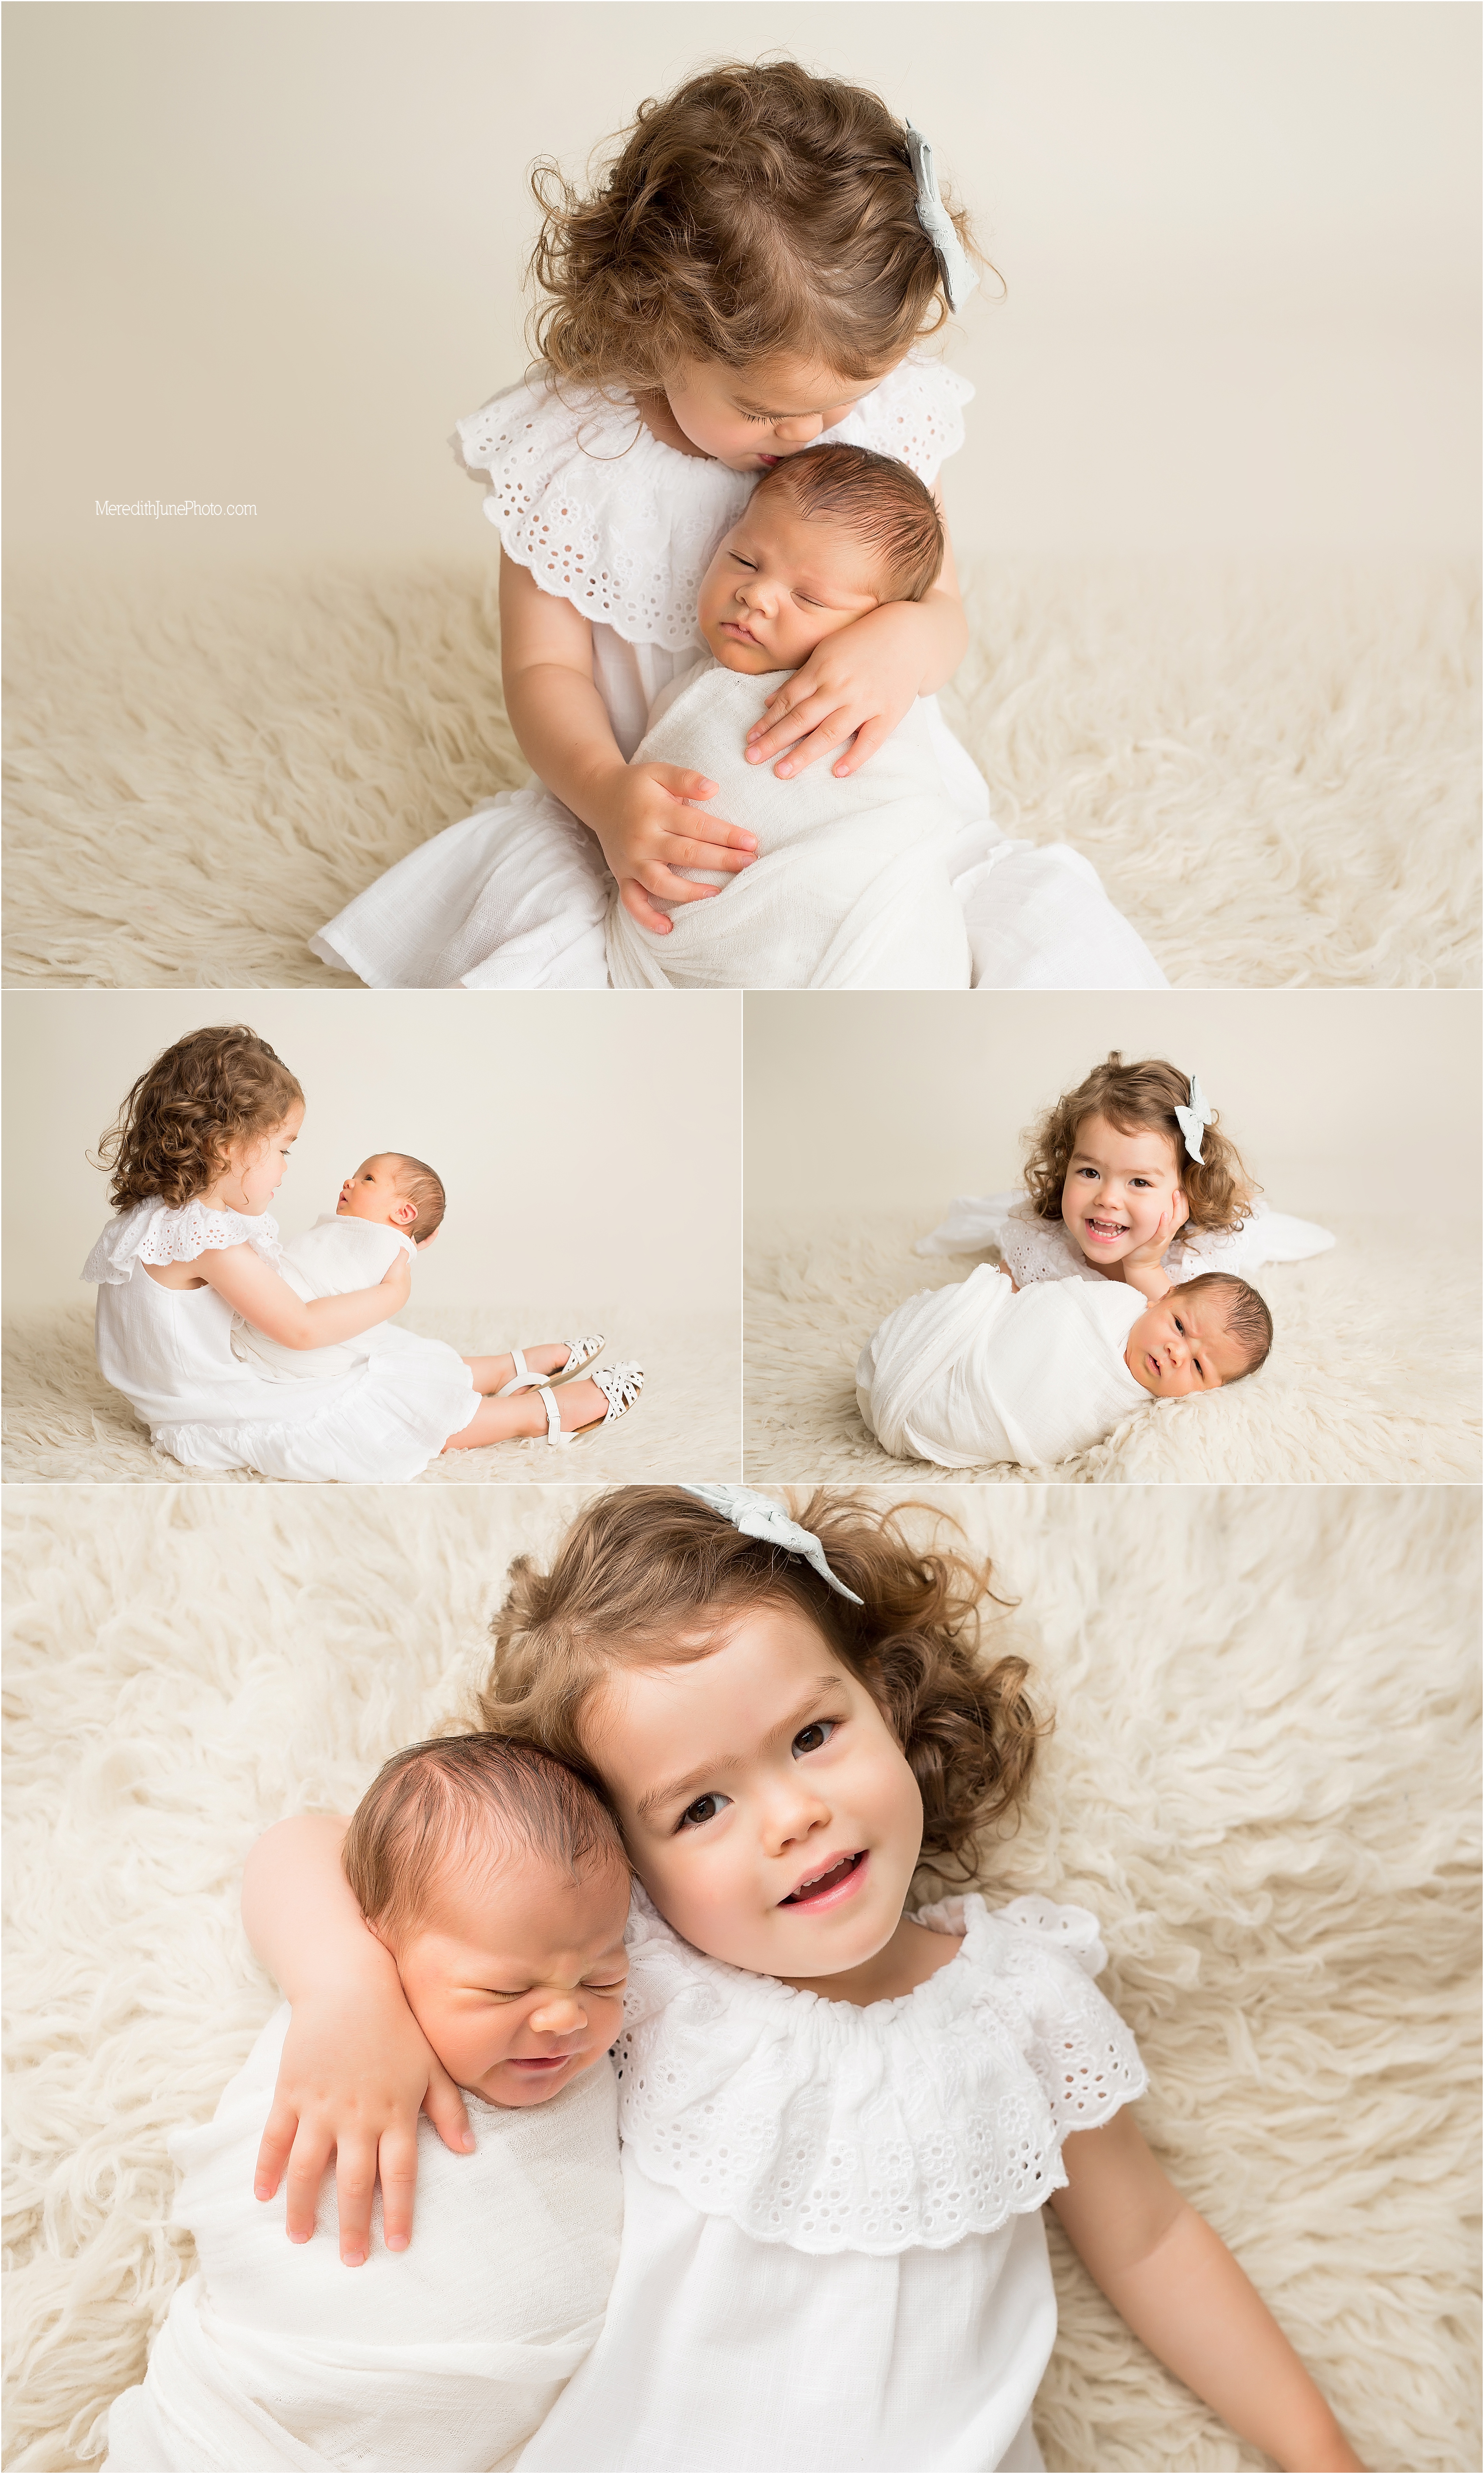 Quinn and baby Ronan at meredith june photography